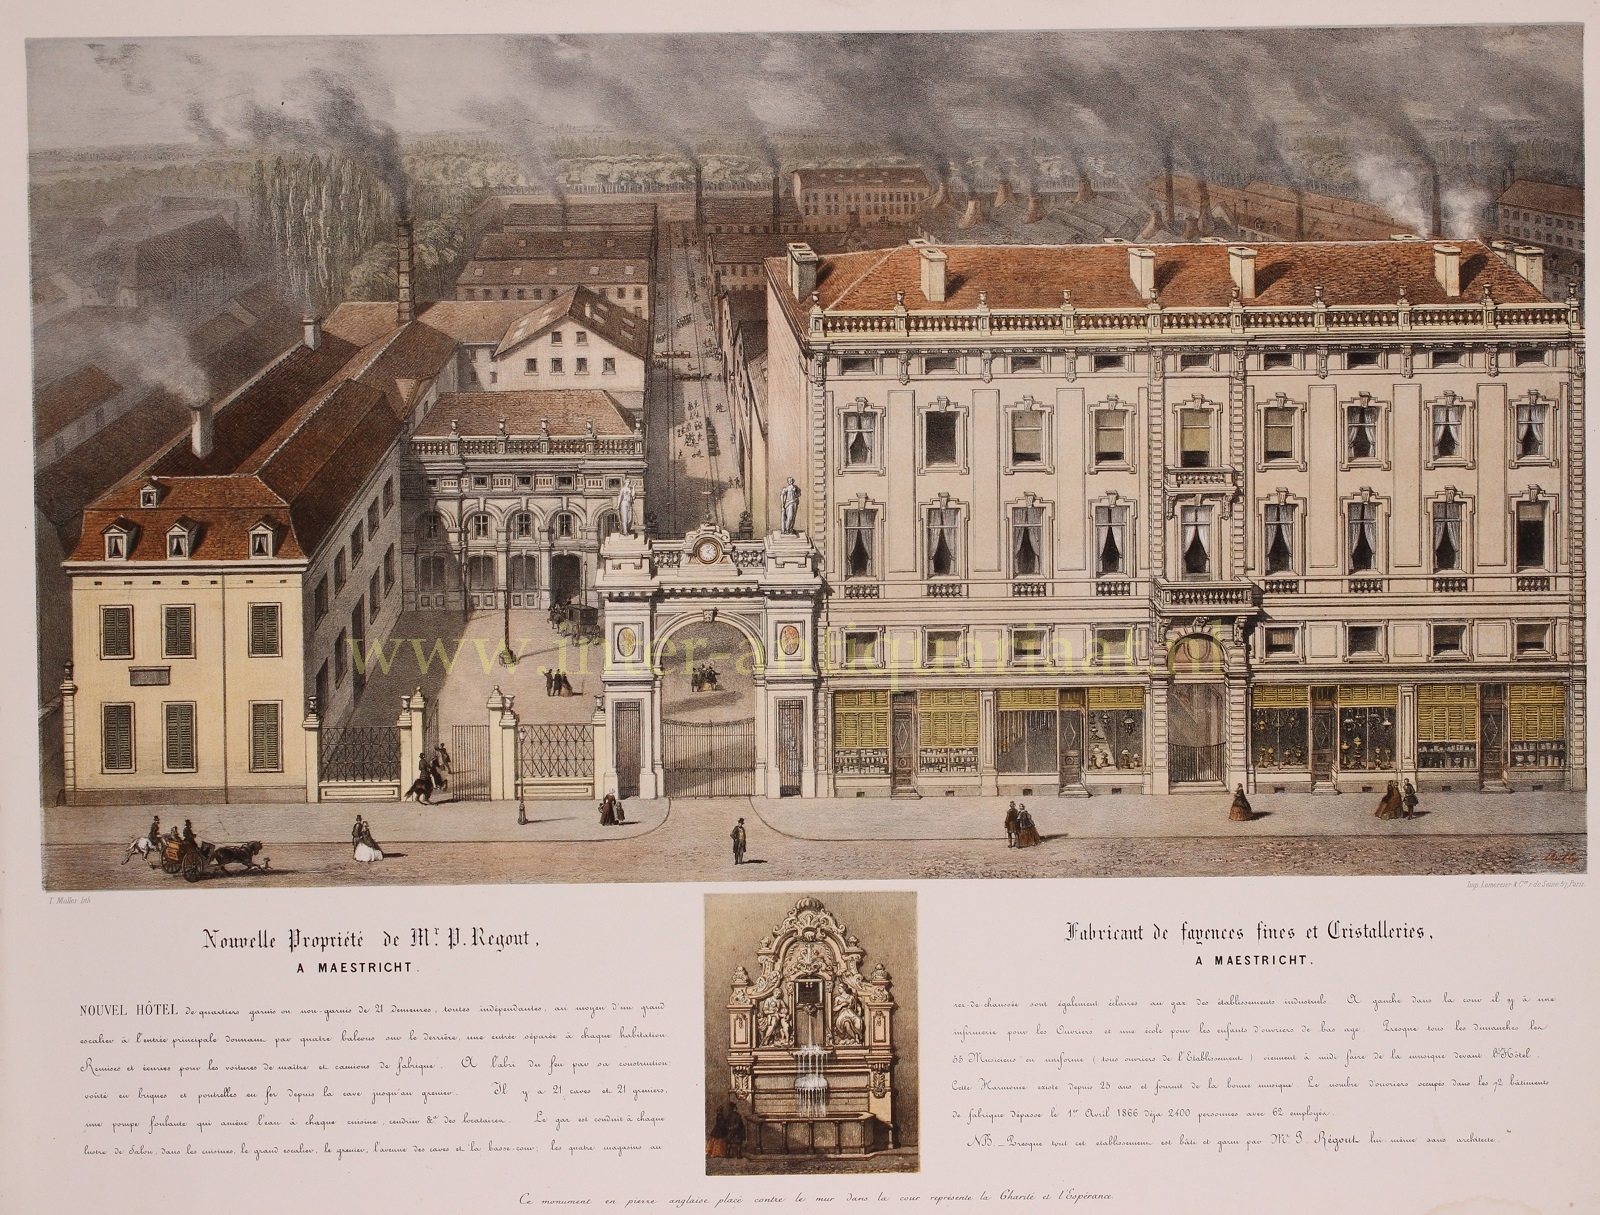  - Maastricht, Boschstraat, Sphinxkwartier - Theodore Mller + Lemercier, 1863